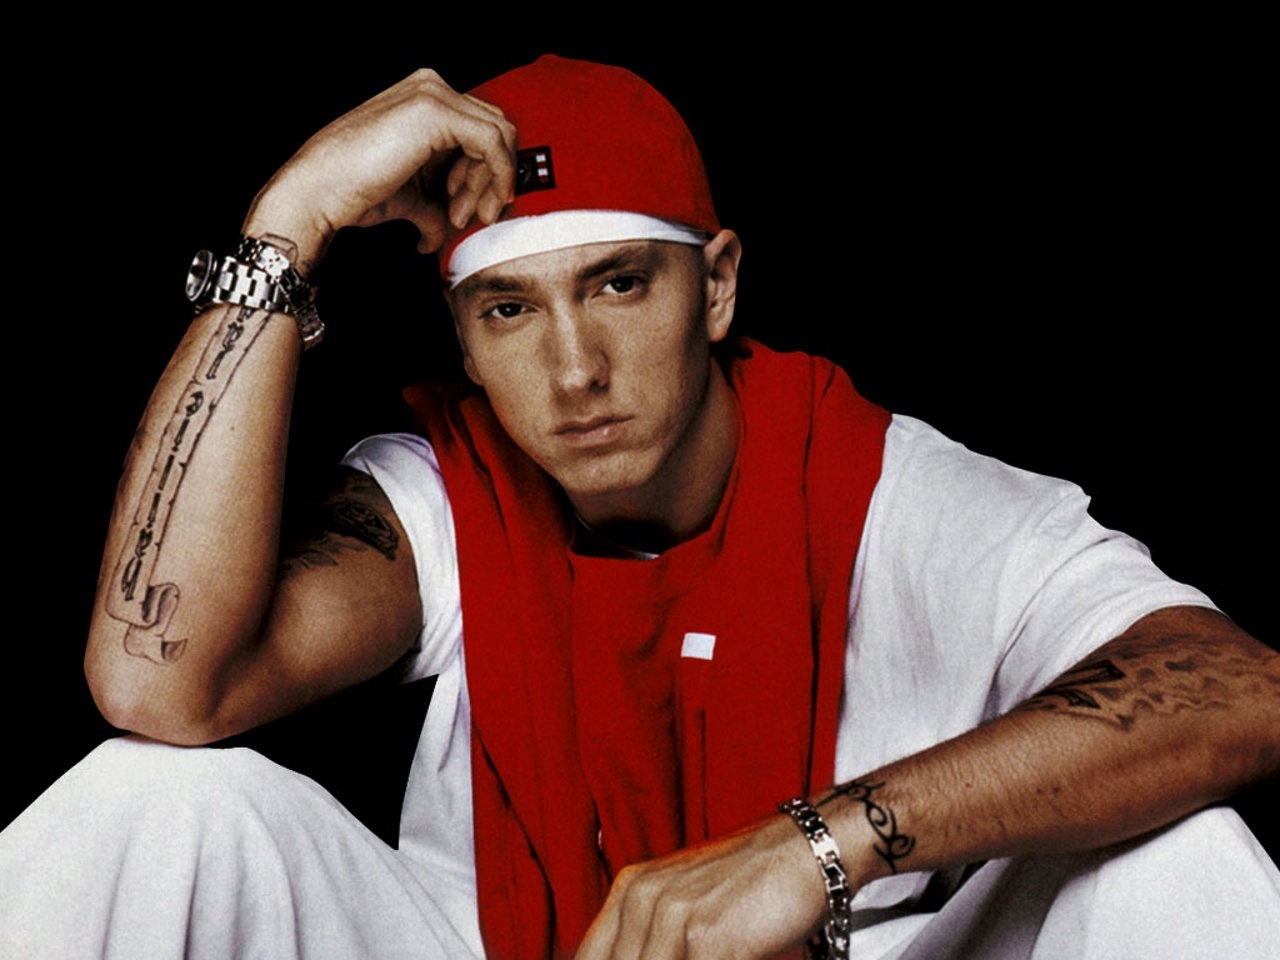 Danh sách kẻ thù của Eminem ngày càng dài hơn bao giờ hết ông hoàng nhạc  rap hay người chuyên gây sự